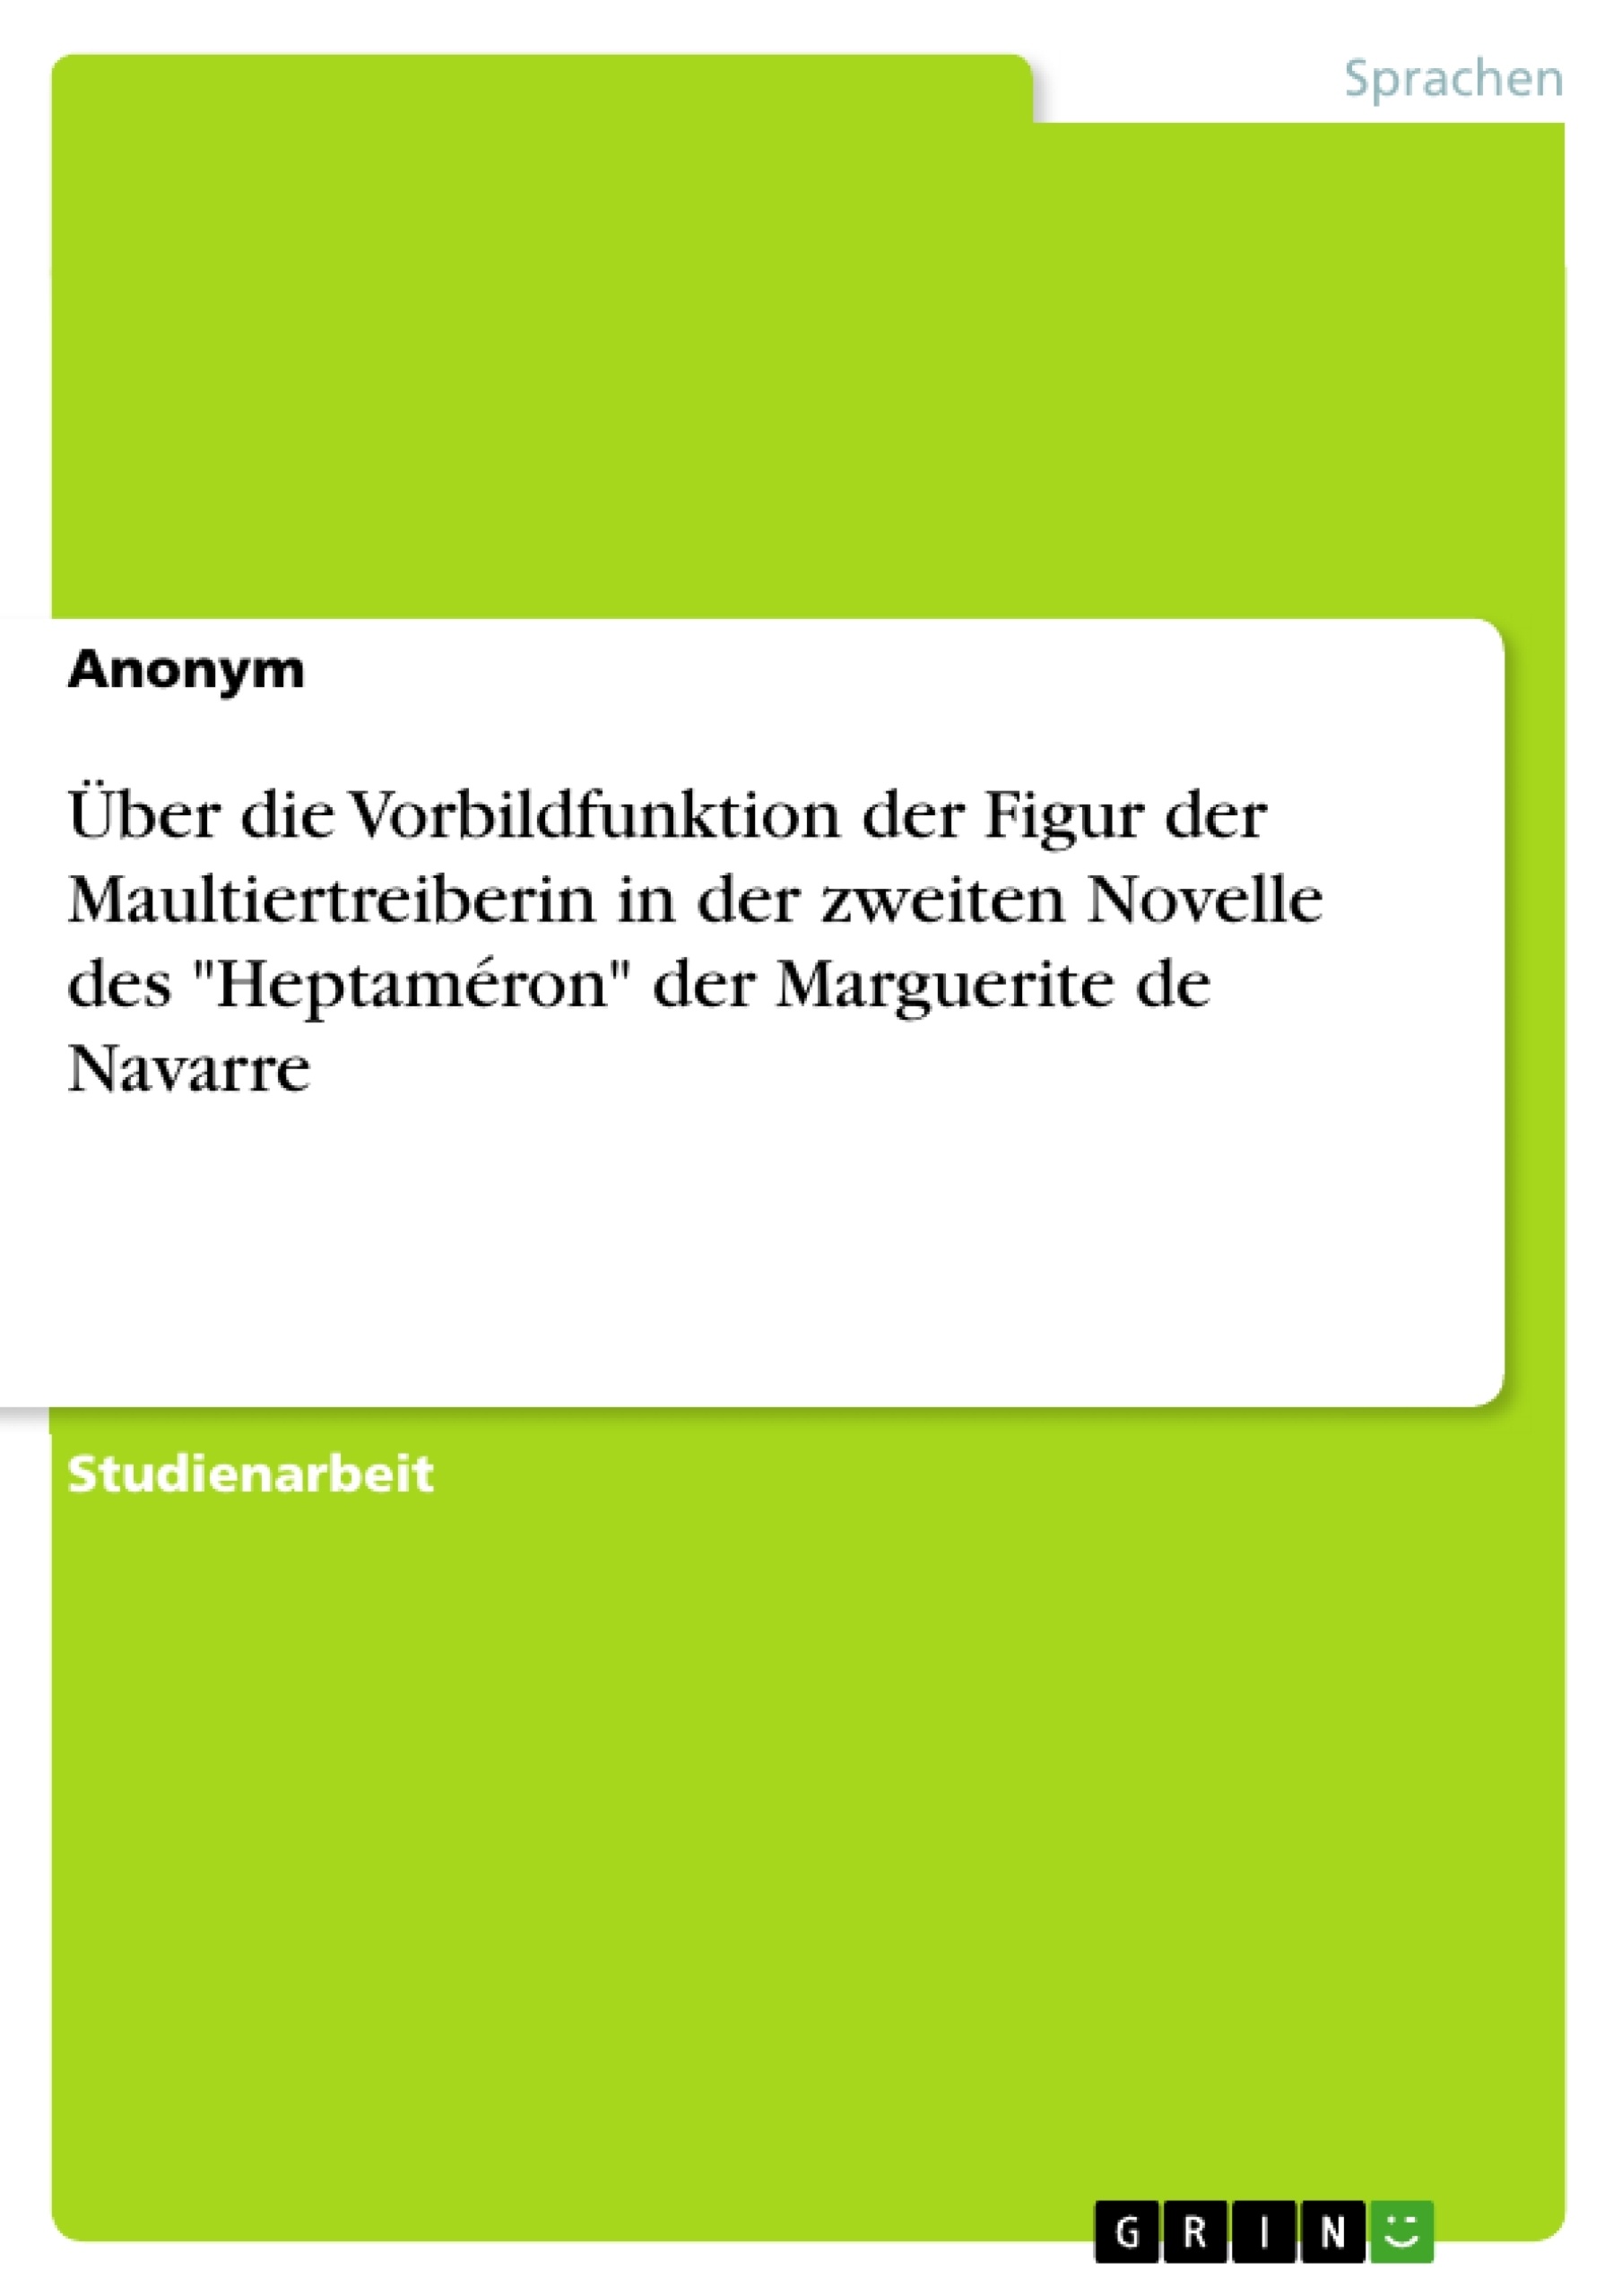 Titel: Über die Vorbildfunktion der Figur der Maultiertreiberin in der zweiten Novelle des "Heptaméron" der Marguerite de Navarre